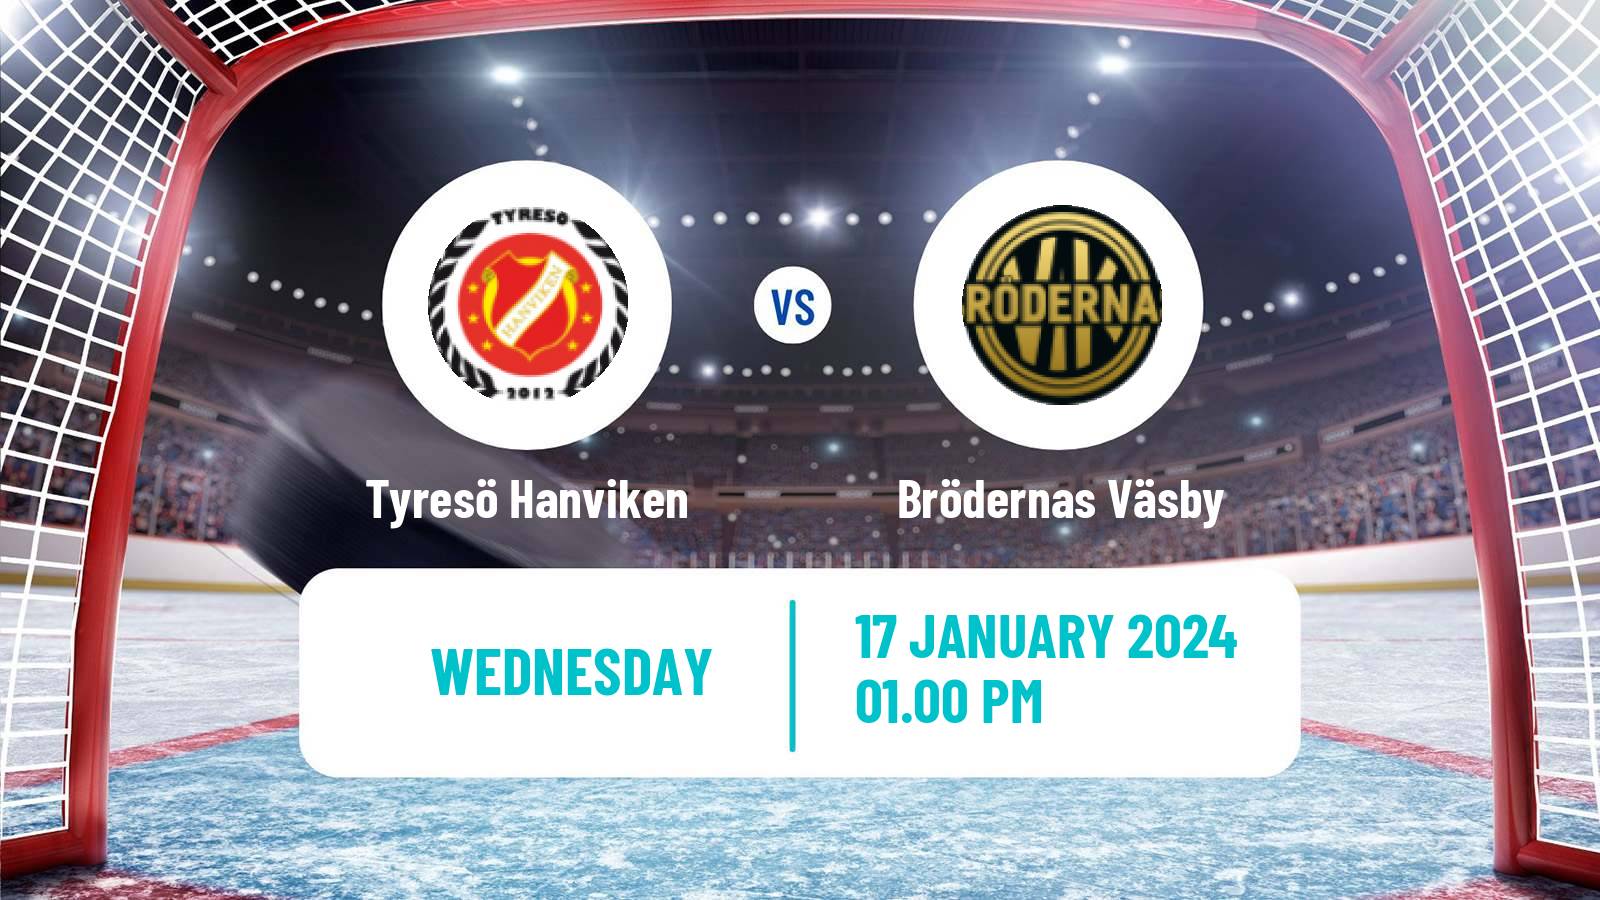 Hockey Swedish HockeyEttan Norra Tyresö Hanviken - Brödernas Väsby